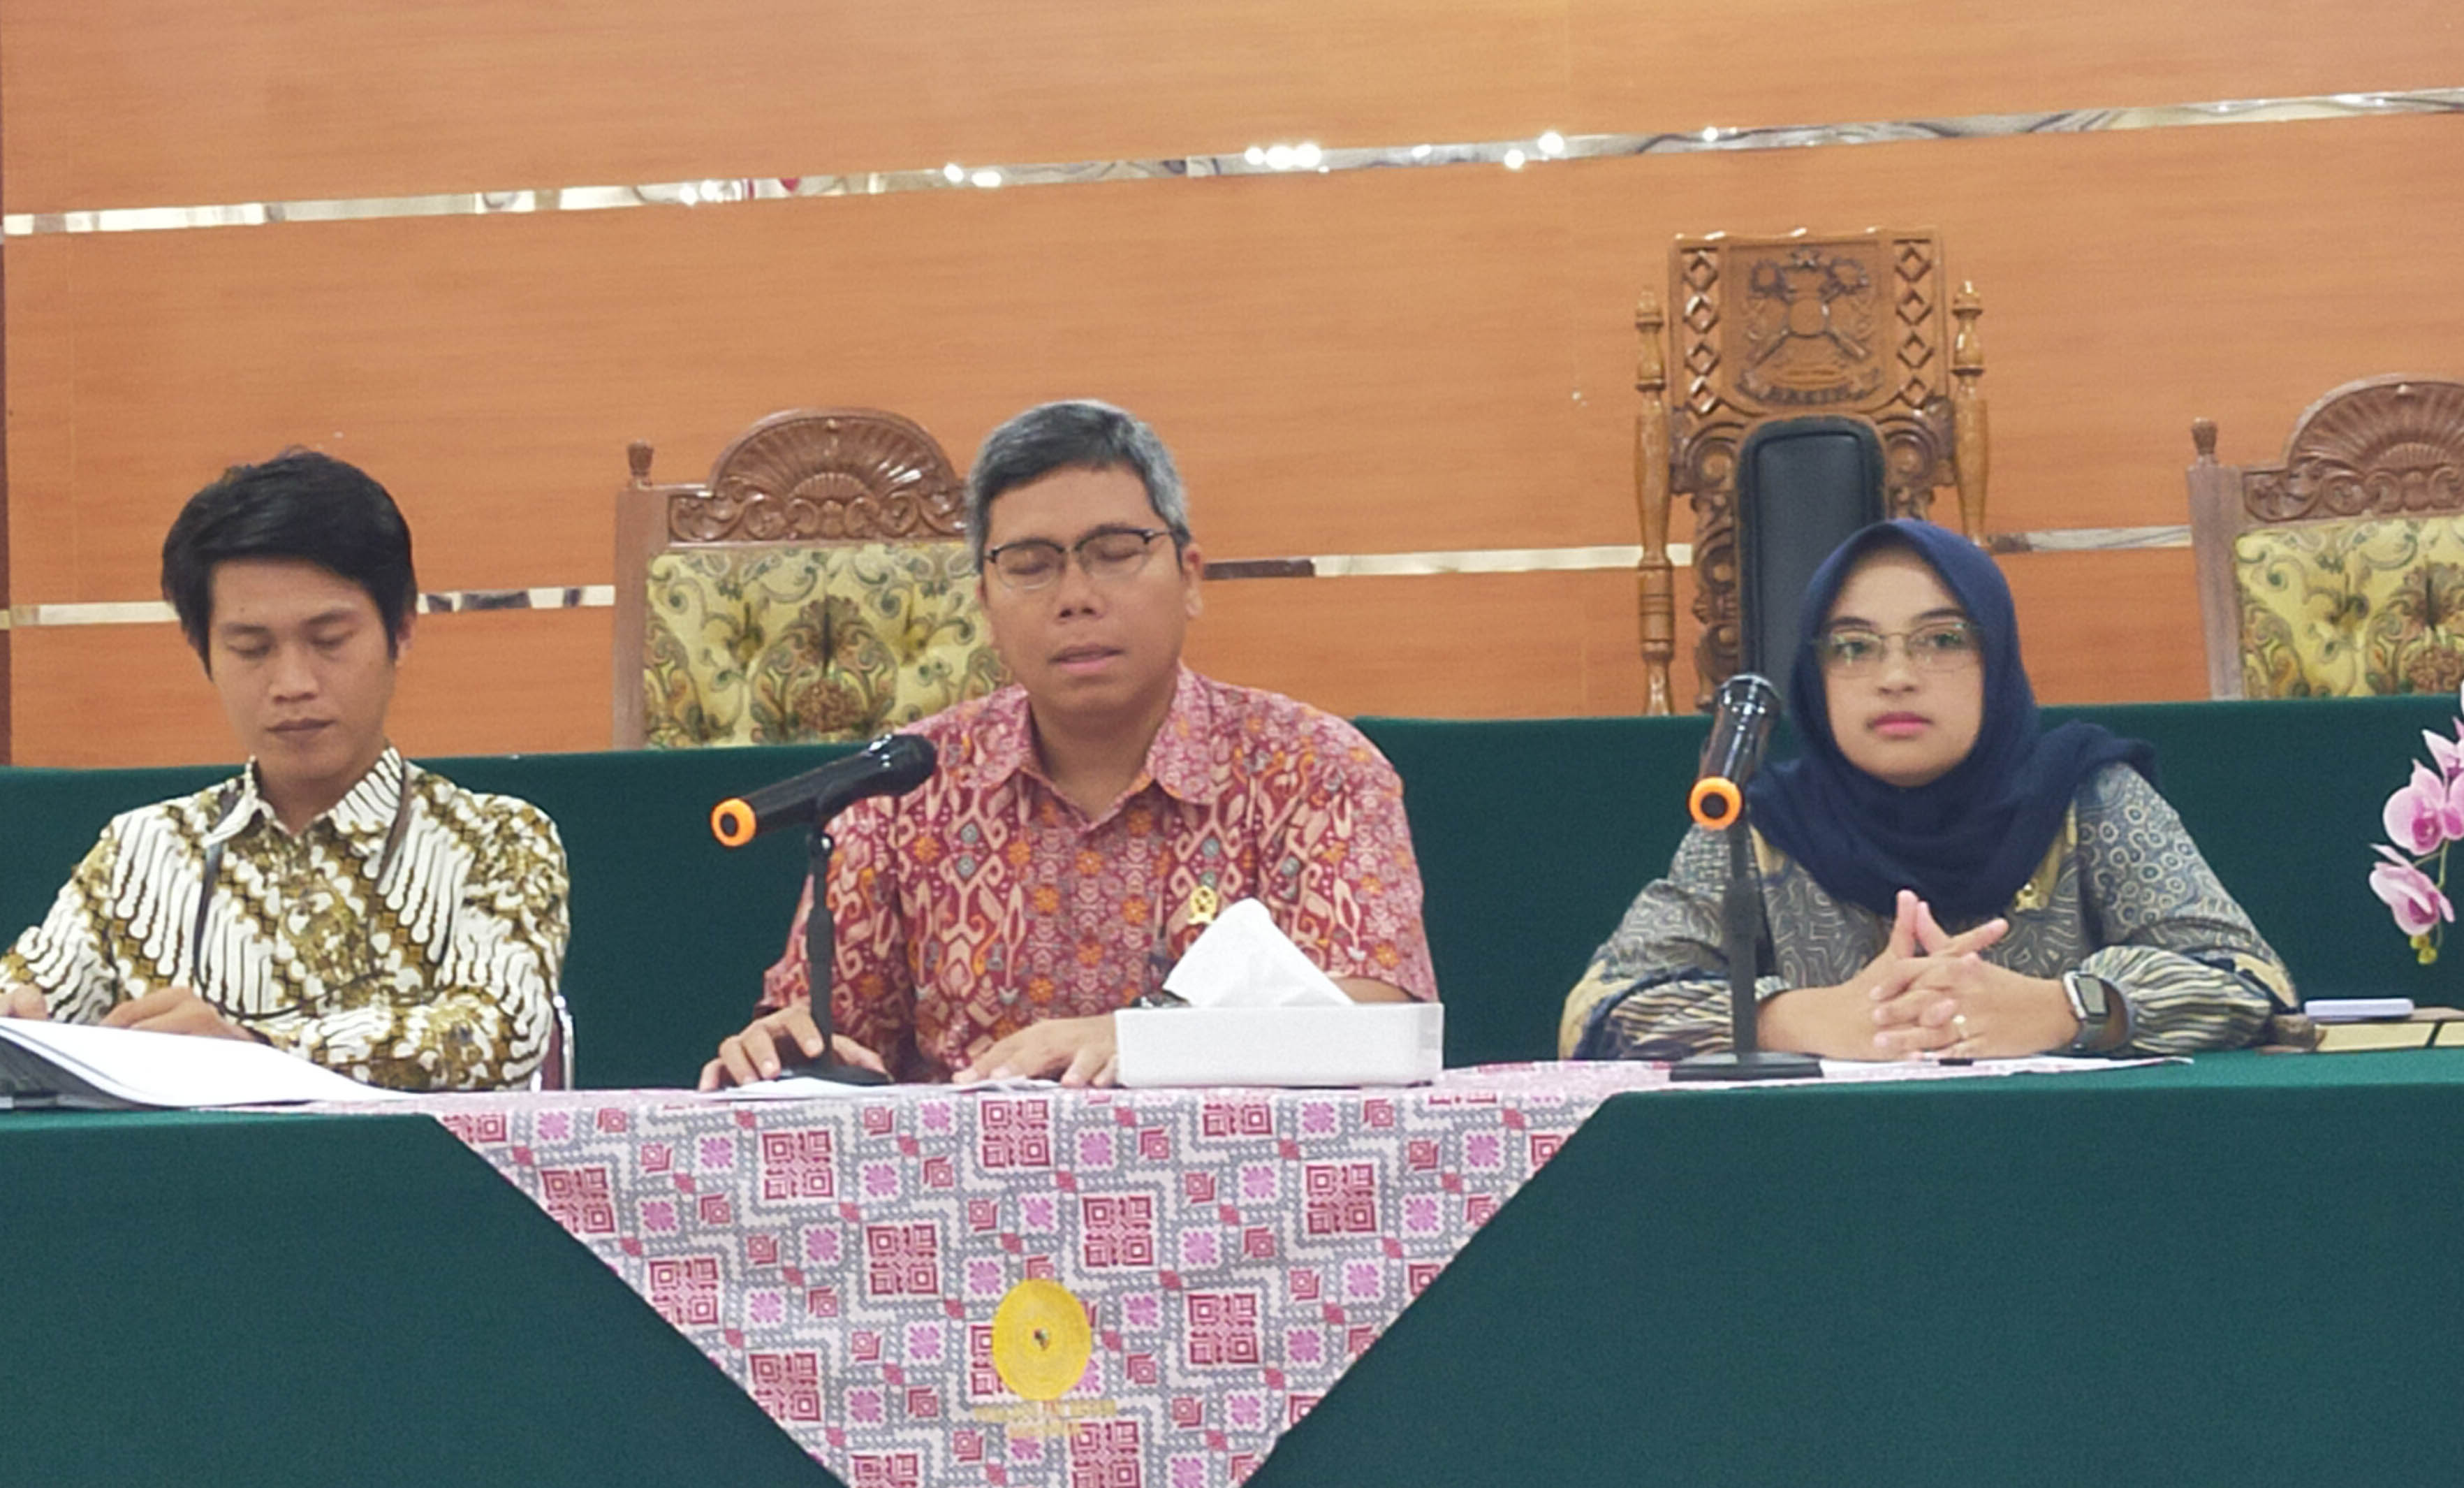    Keterbukaan Informasi Menjadi Komitmen MARI! PN Bengkulu Selatan Siap Terapkan